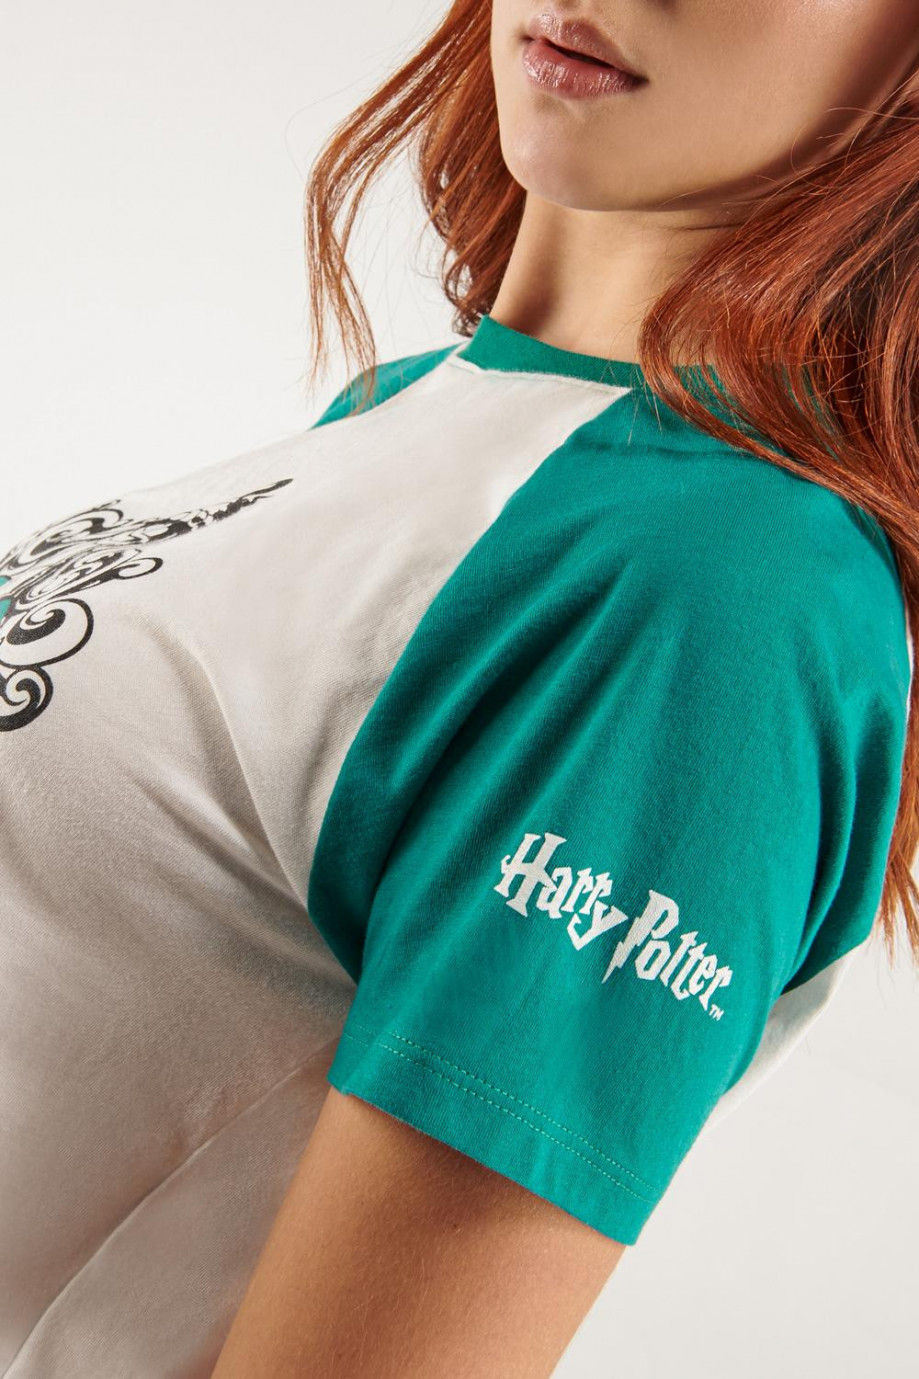 Camiseta manga ranglan corta estampado de Harry Potter.